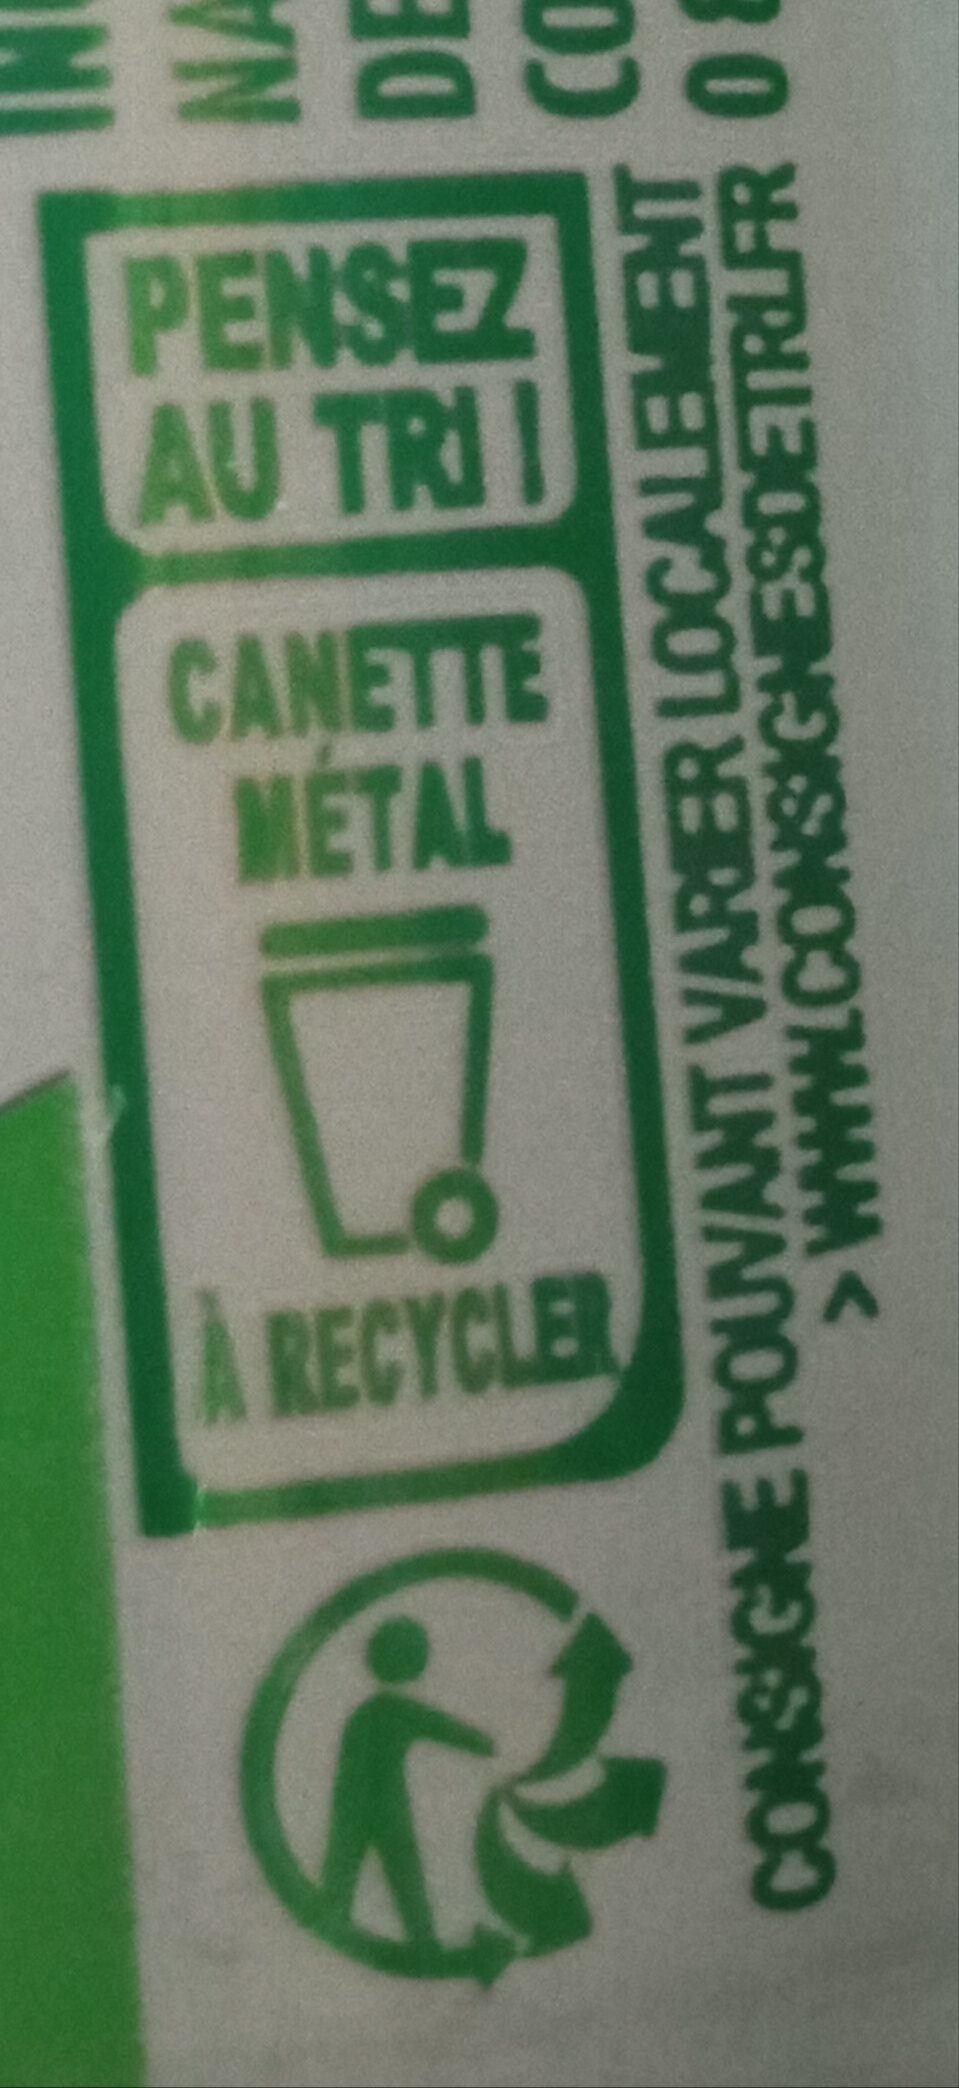 Perrier energize - Instruction de recyclage et/ou informations d'emballage